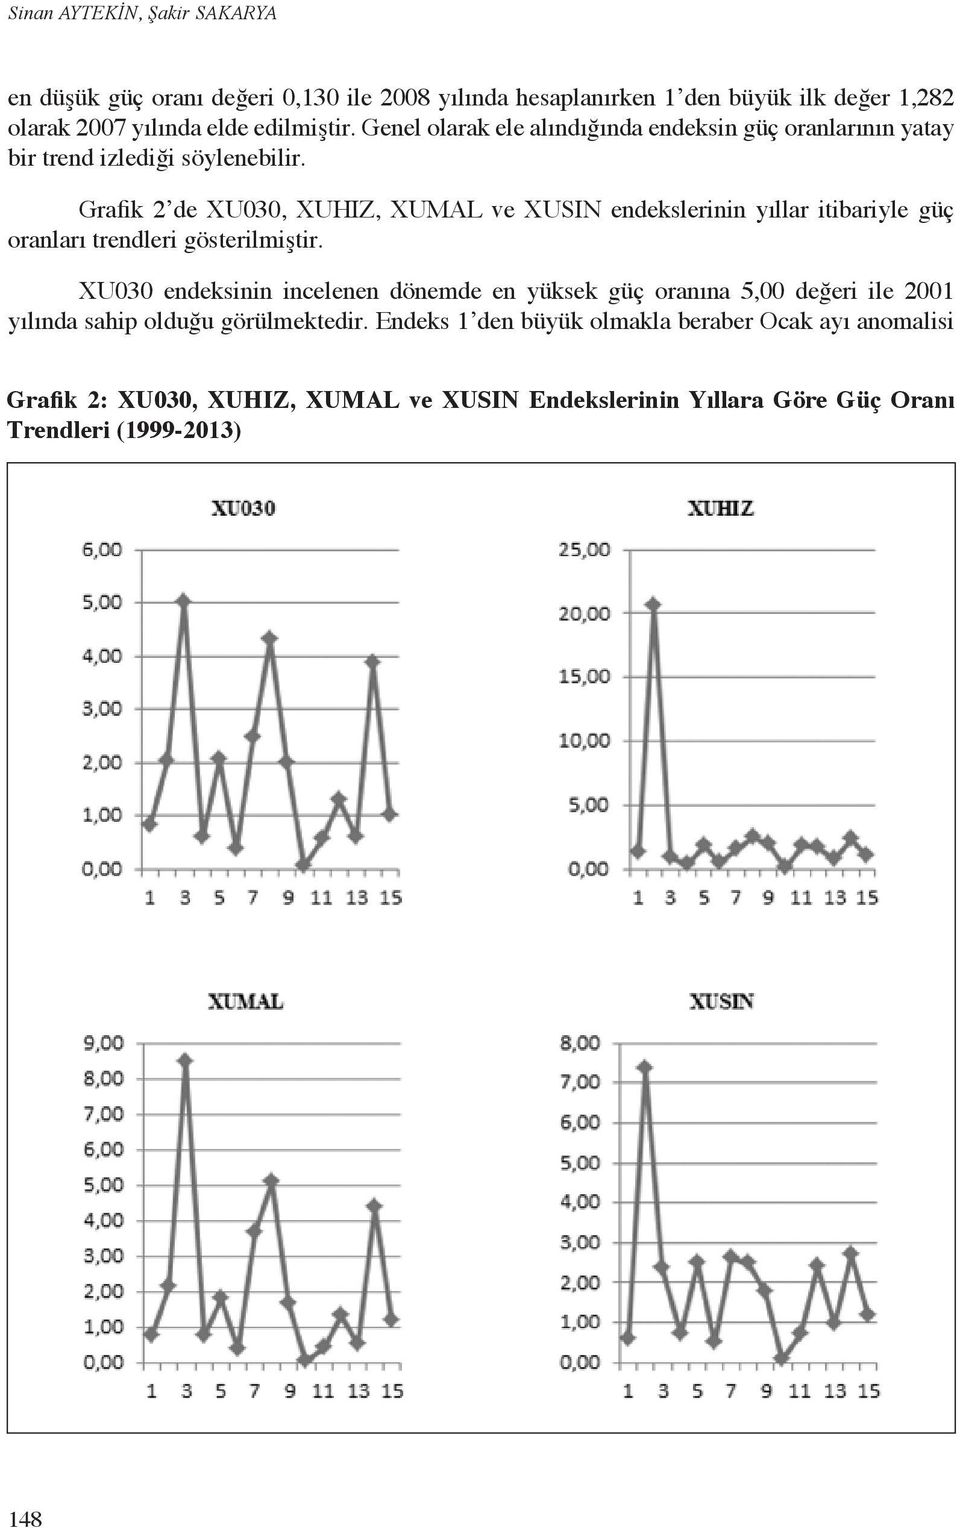 Grafik 2 de XU030, XUHIZ, XUMAL ve XUSIN endekslerinin yıllar itibariyle güç oranları trendleri gösterilmiştir.